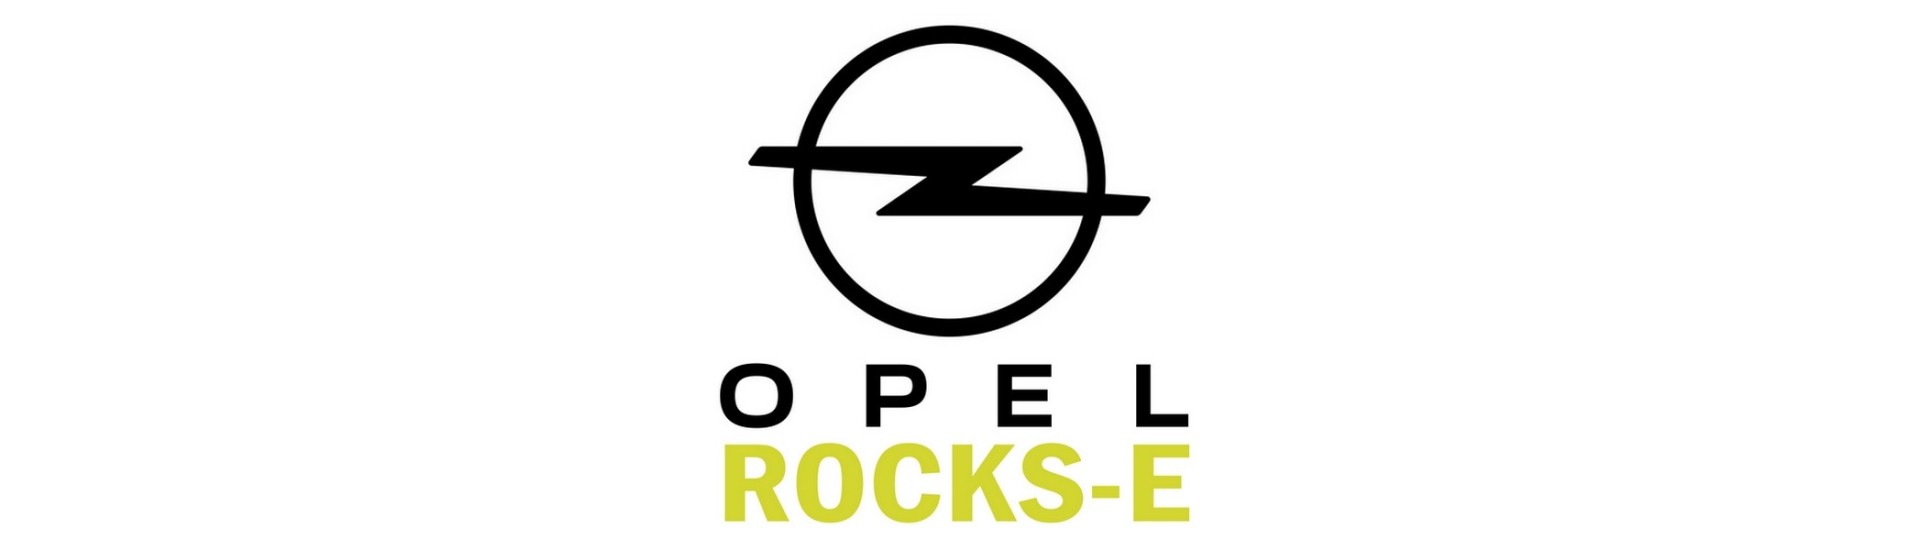 Gâche porte capot hayon pour voiture sans permis Opel Rocks-E